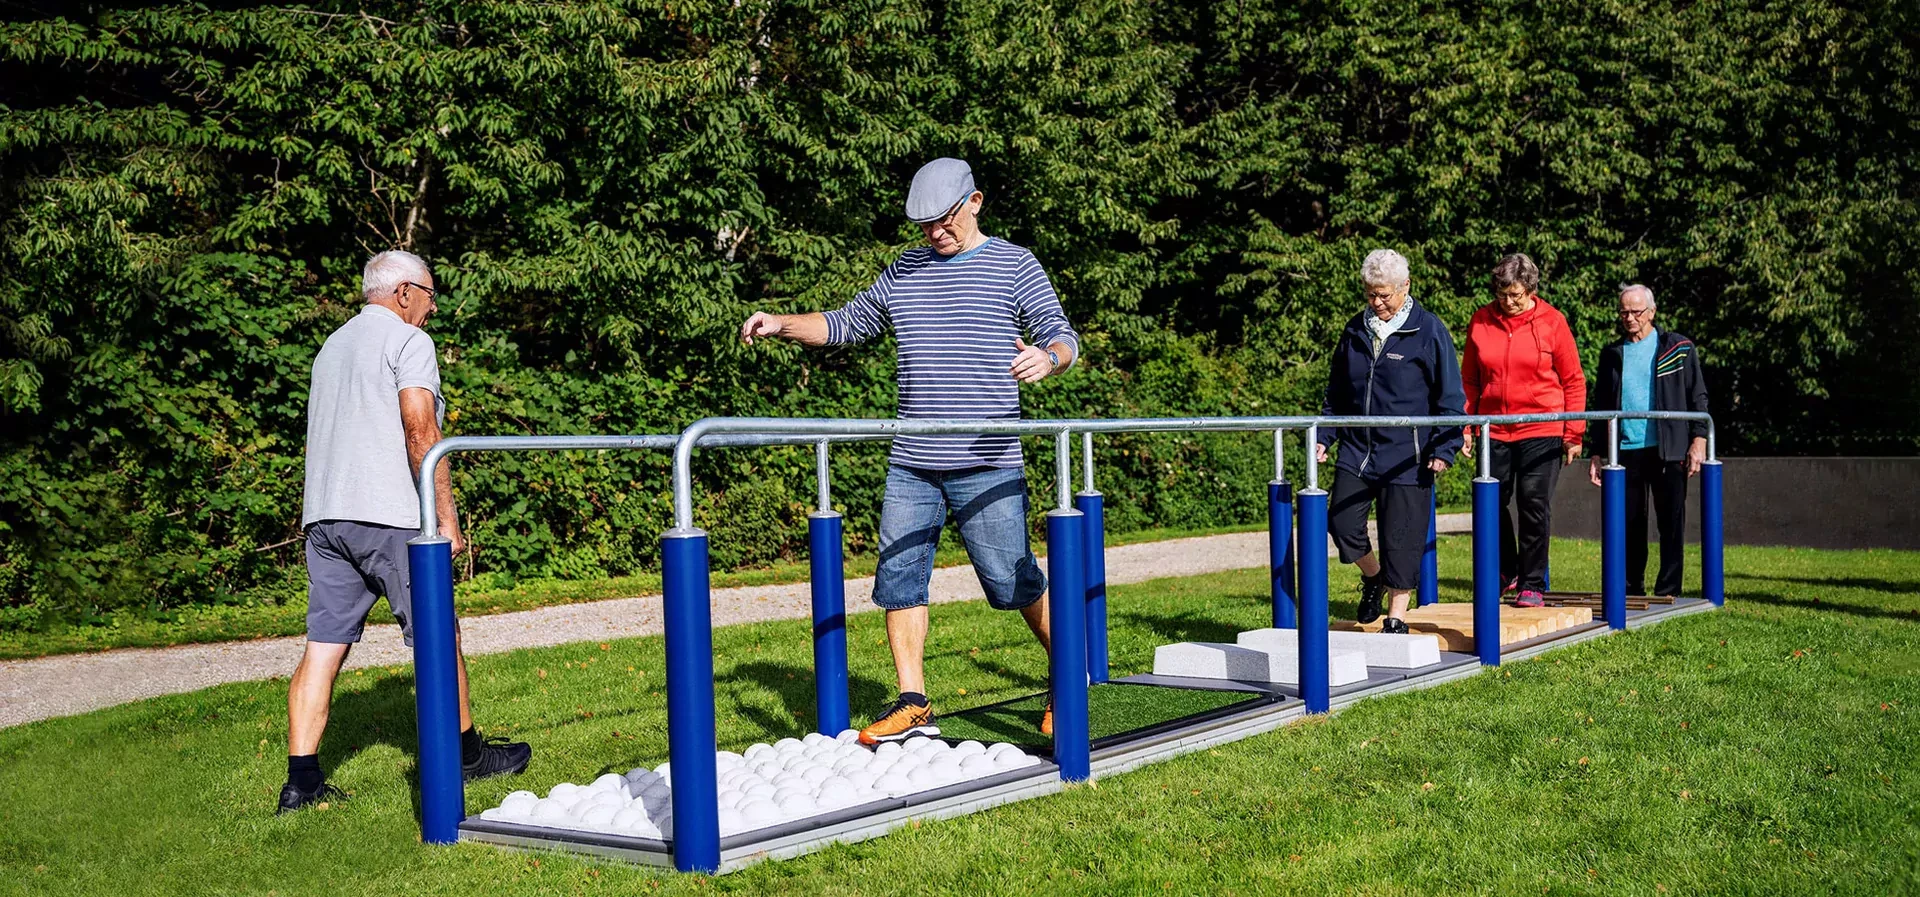 senior citizens using outdoor gym equipment for elderly hero image